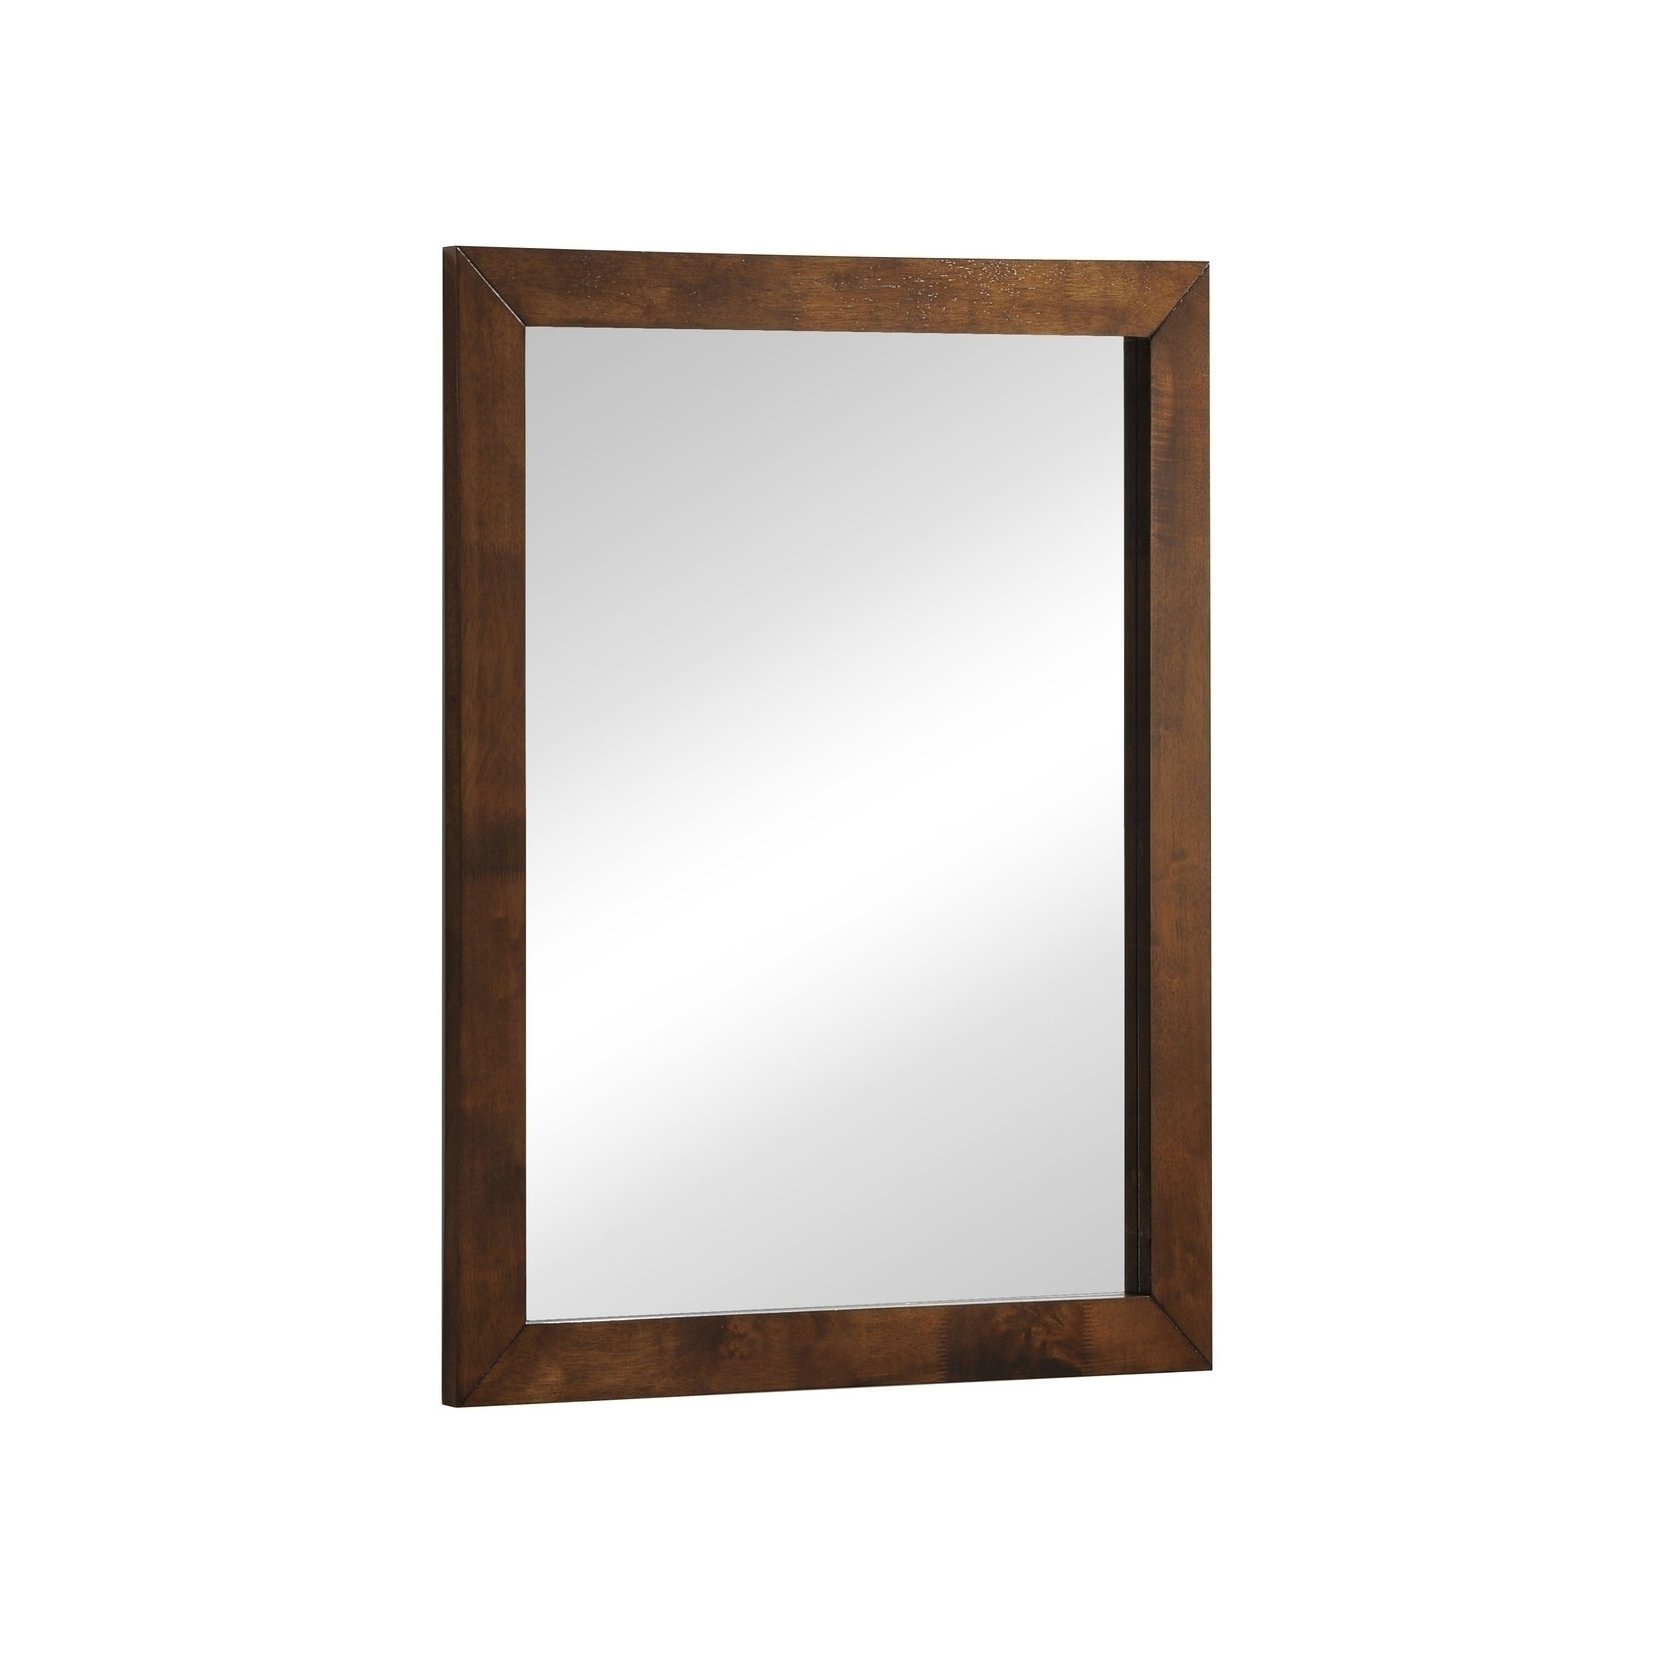 Hammond | La Mirror Furniture-Decor Accessories-Mirrors